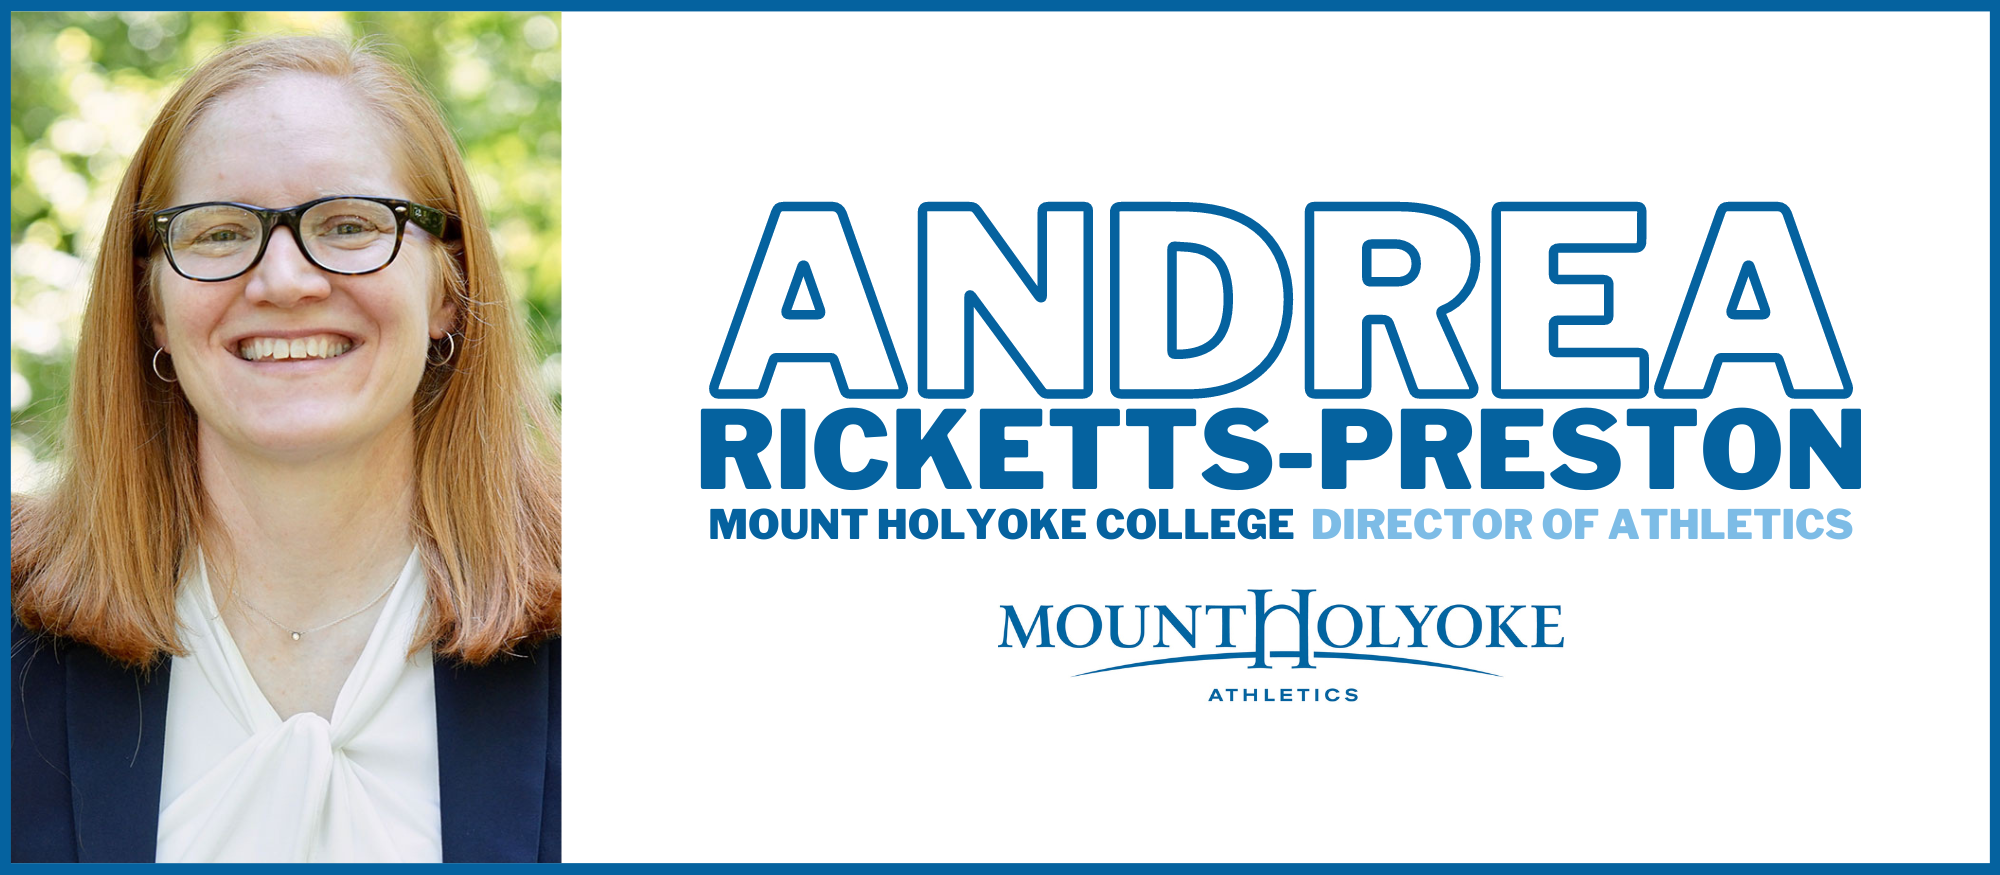 Andrea Ricketts-Preston named Director of Athletics